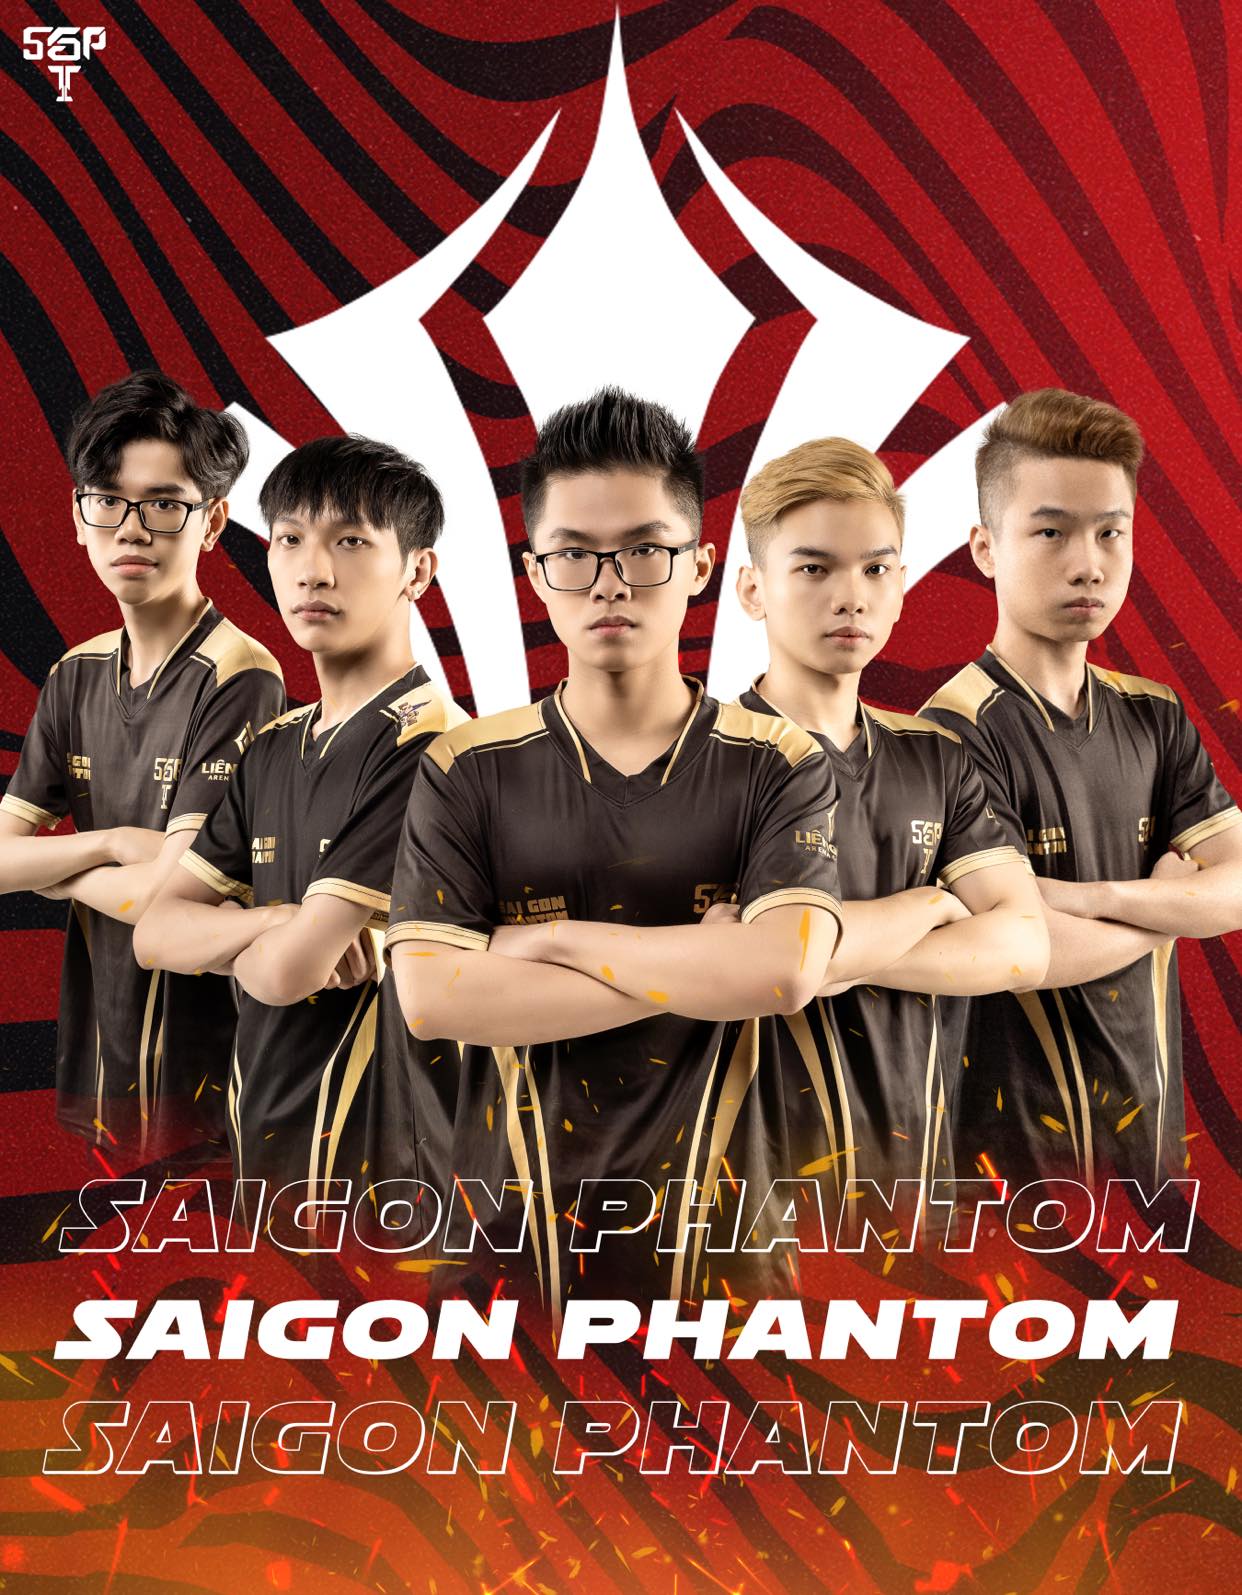 Saigon Phantom: Khi các thần đồng lộ điểm yếu chí mạng và phải gục ngã đáng tiếc trên sàn đấu lớn! - Ảnh 7.